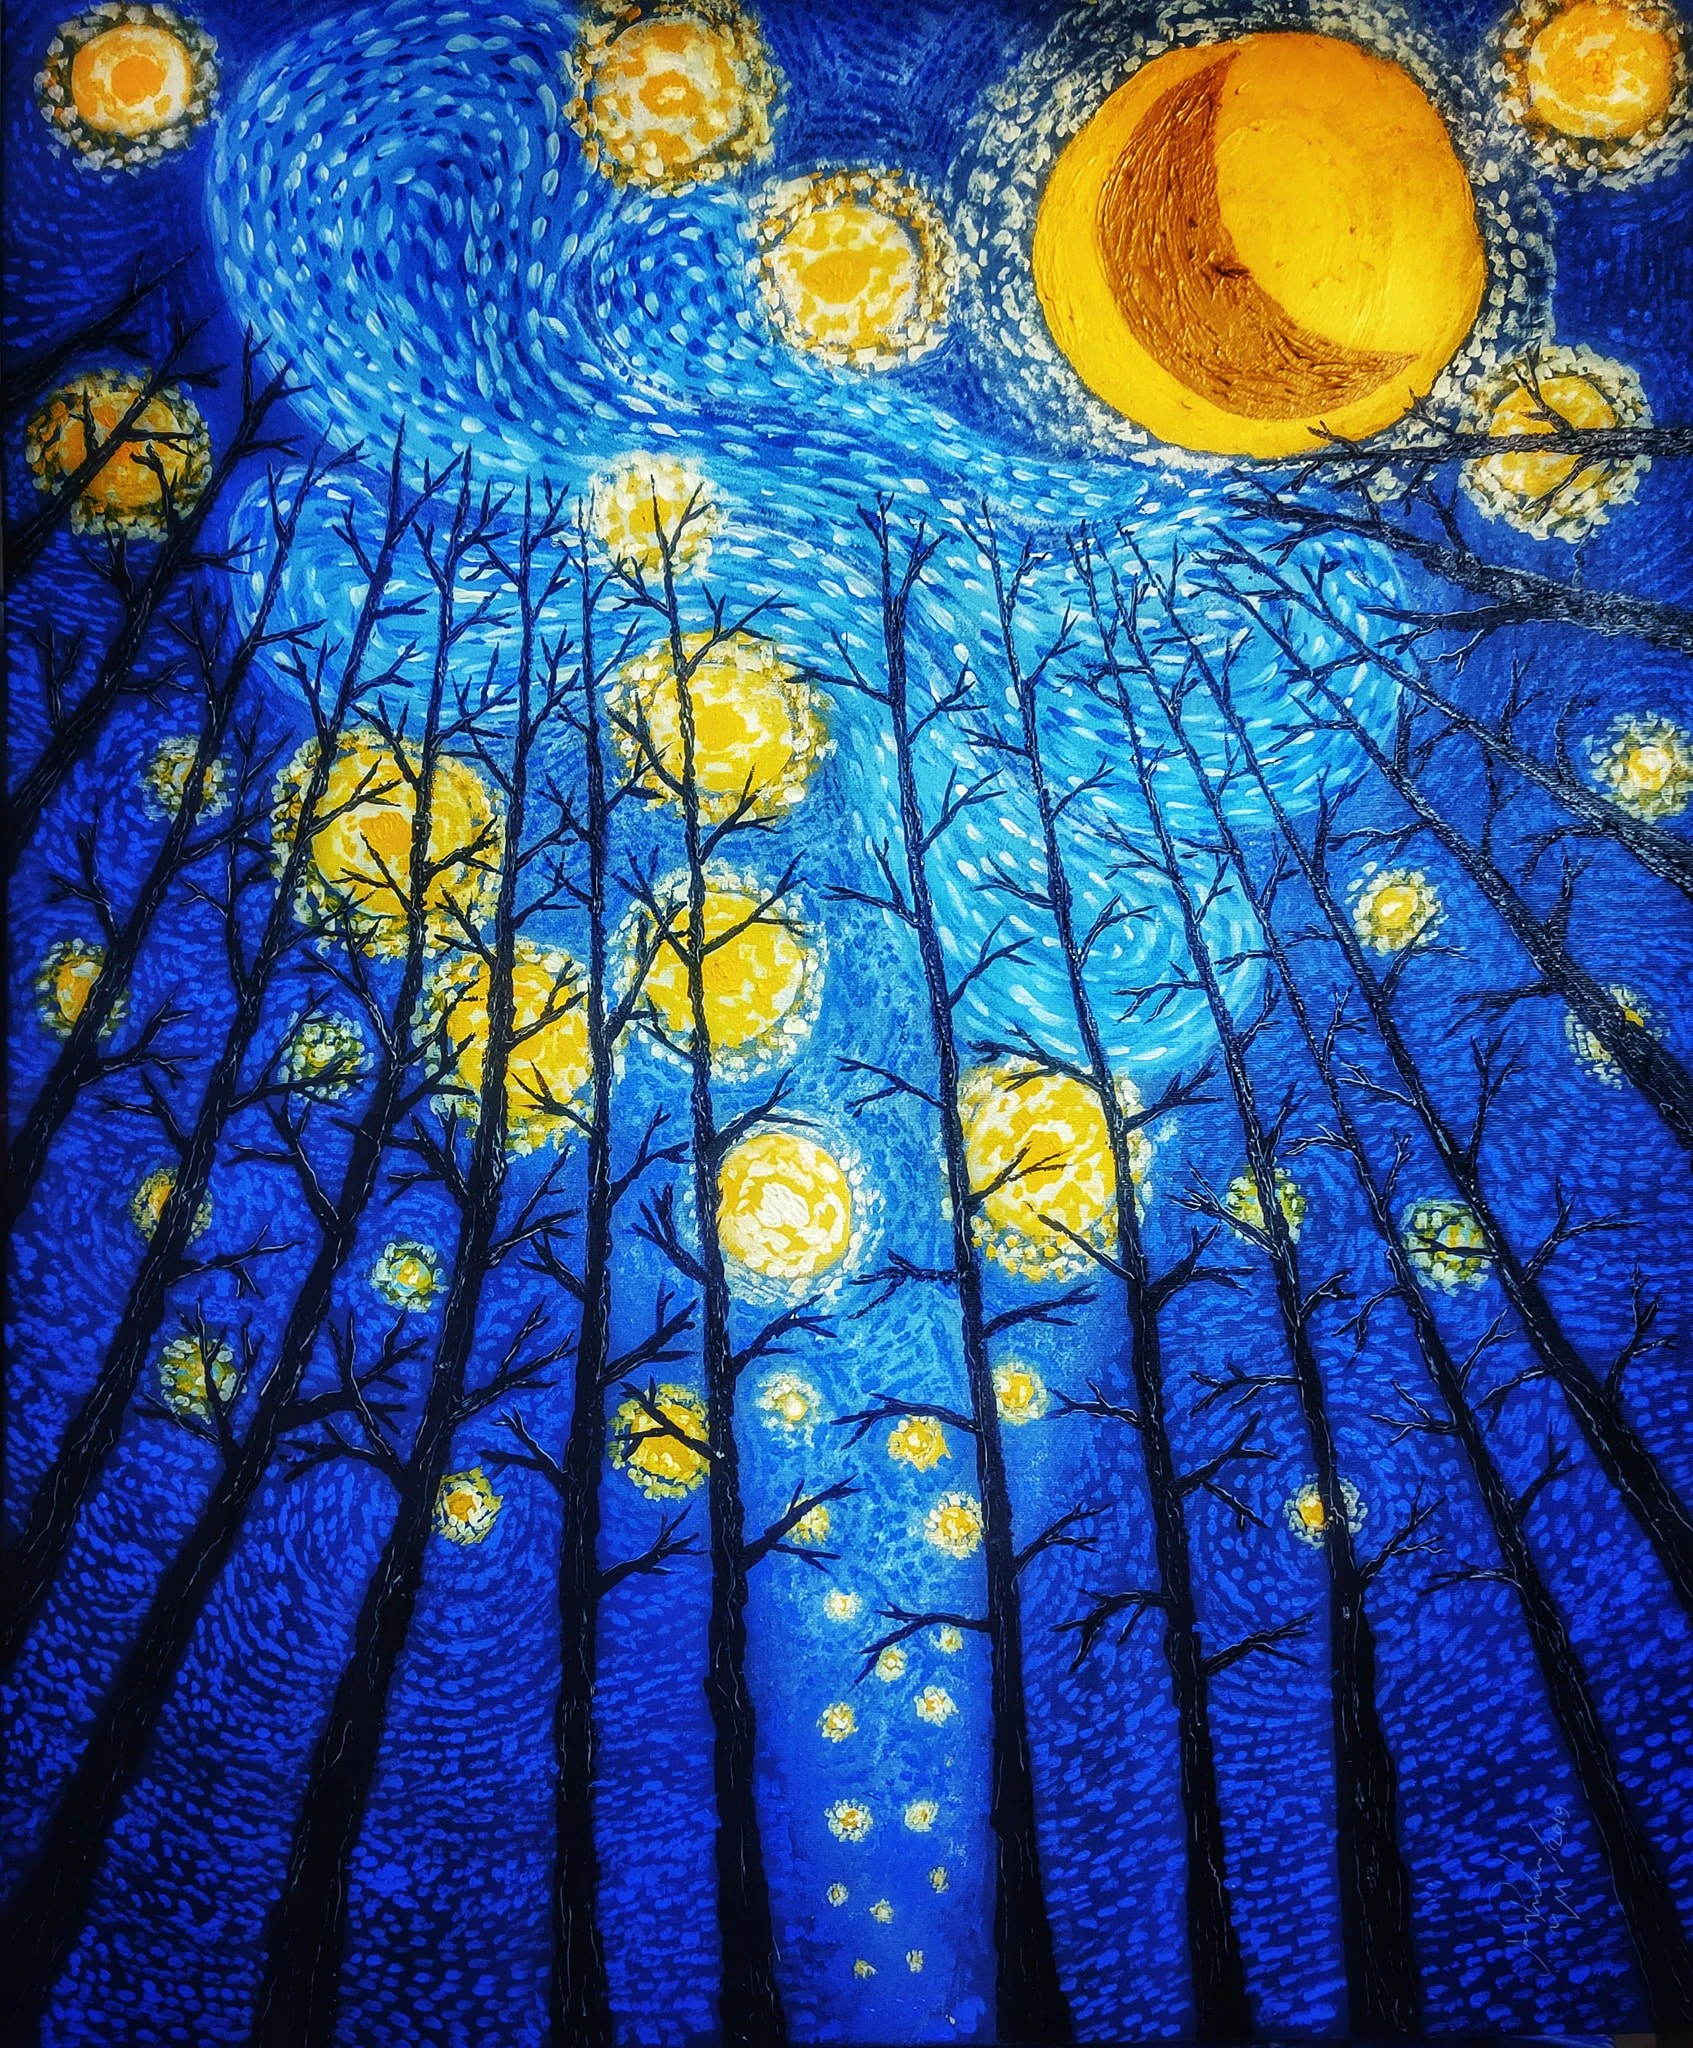 Horizon at the Starry Night